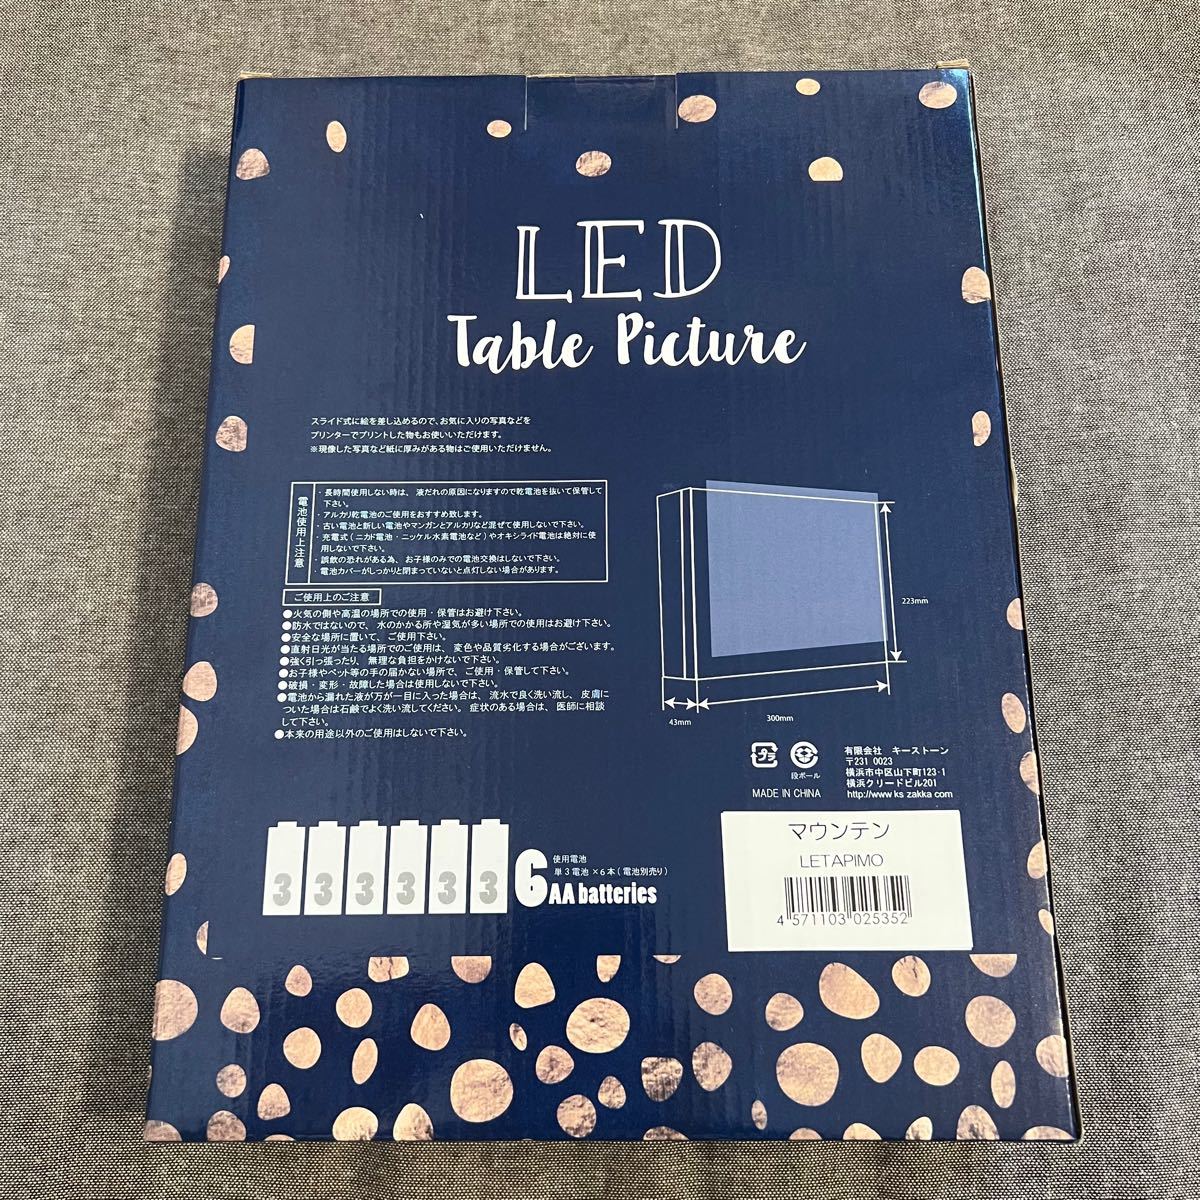 キーストーン LED テーブル ピクチャー マウンテン LETAPIMO ライト フォトフレーム 写真立て